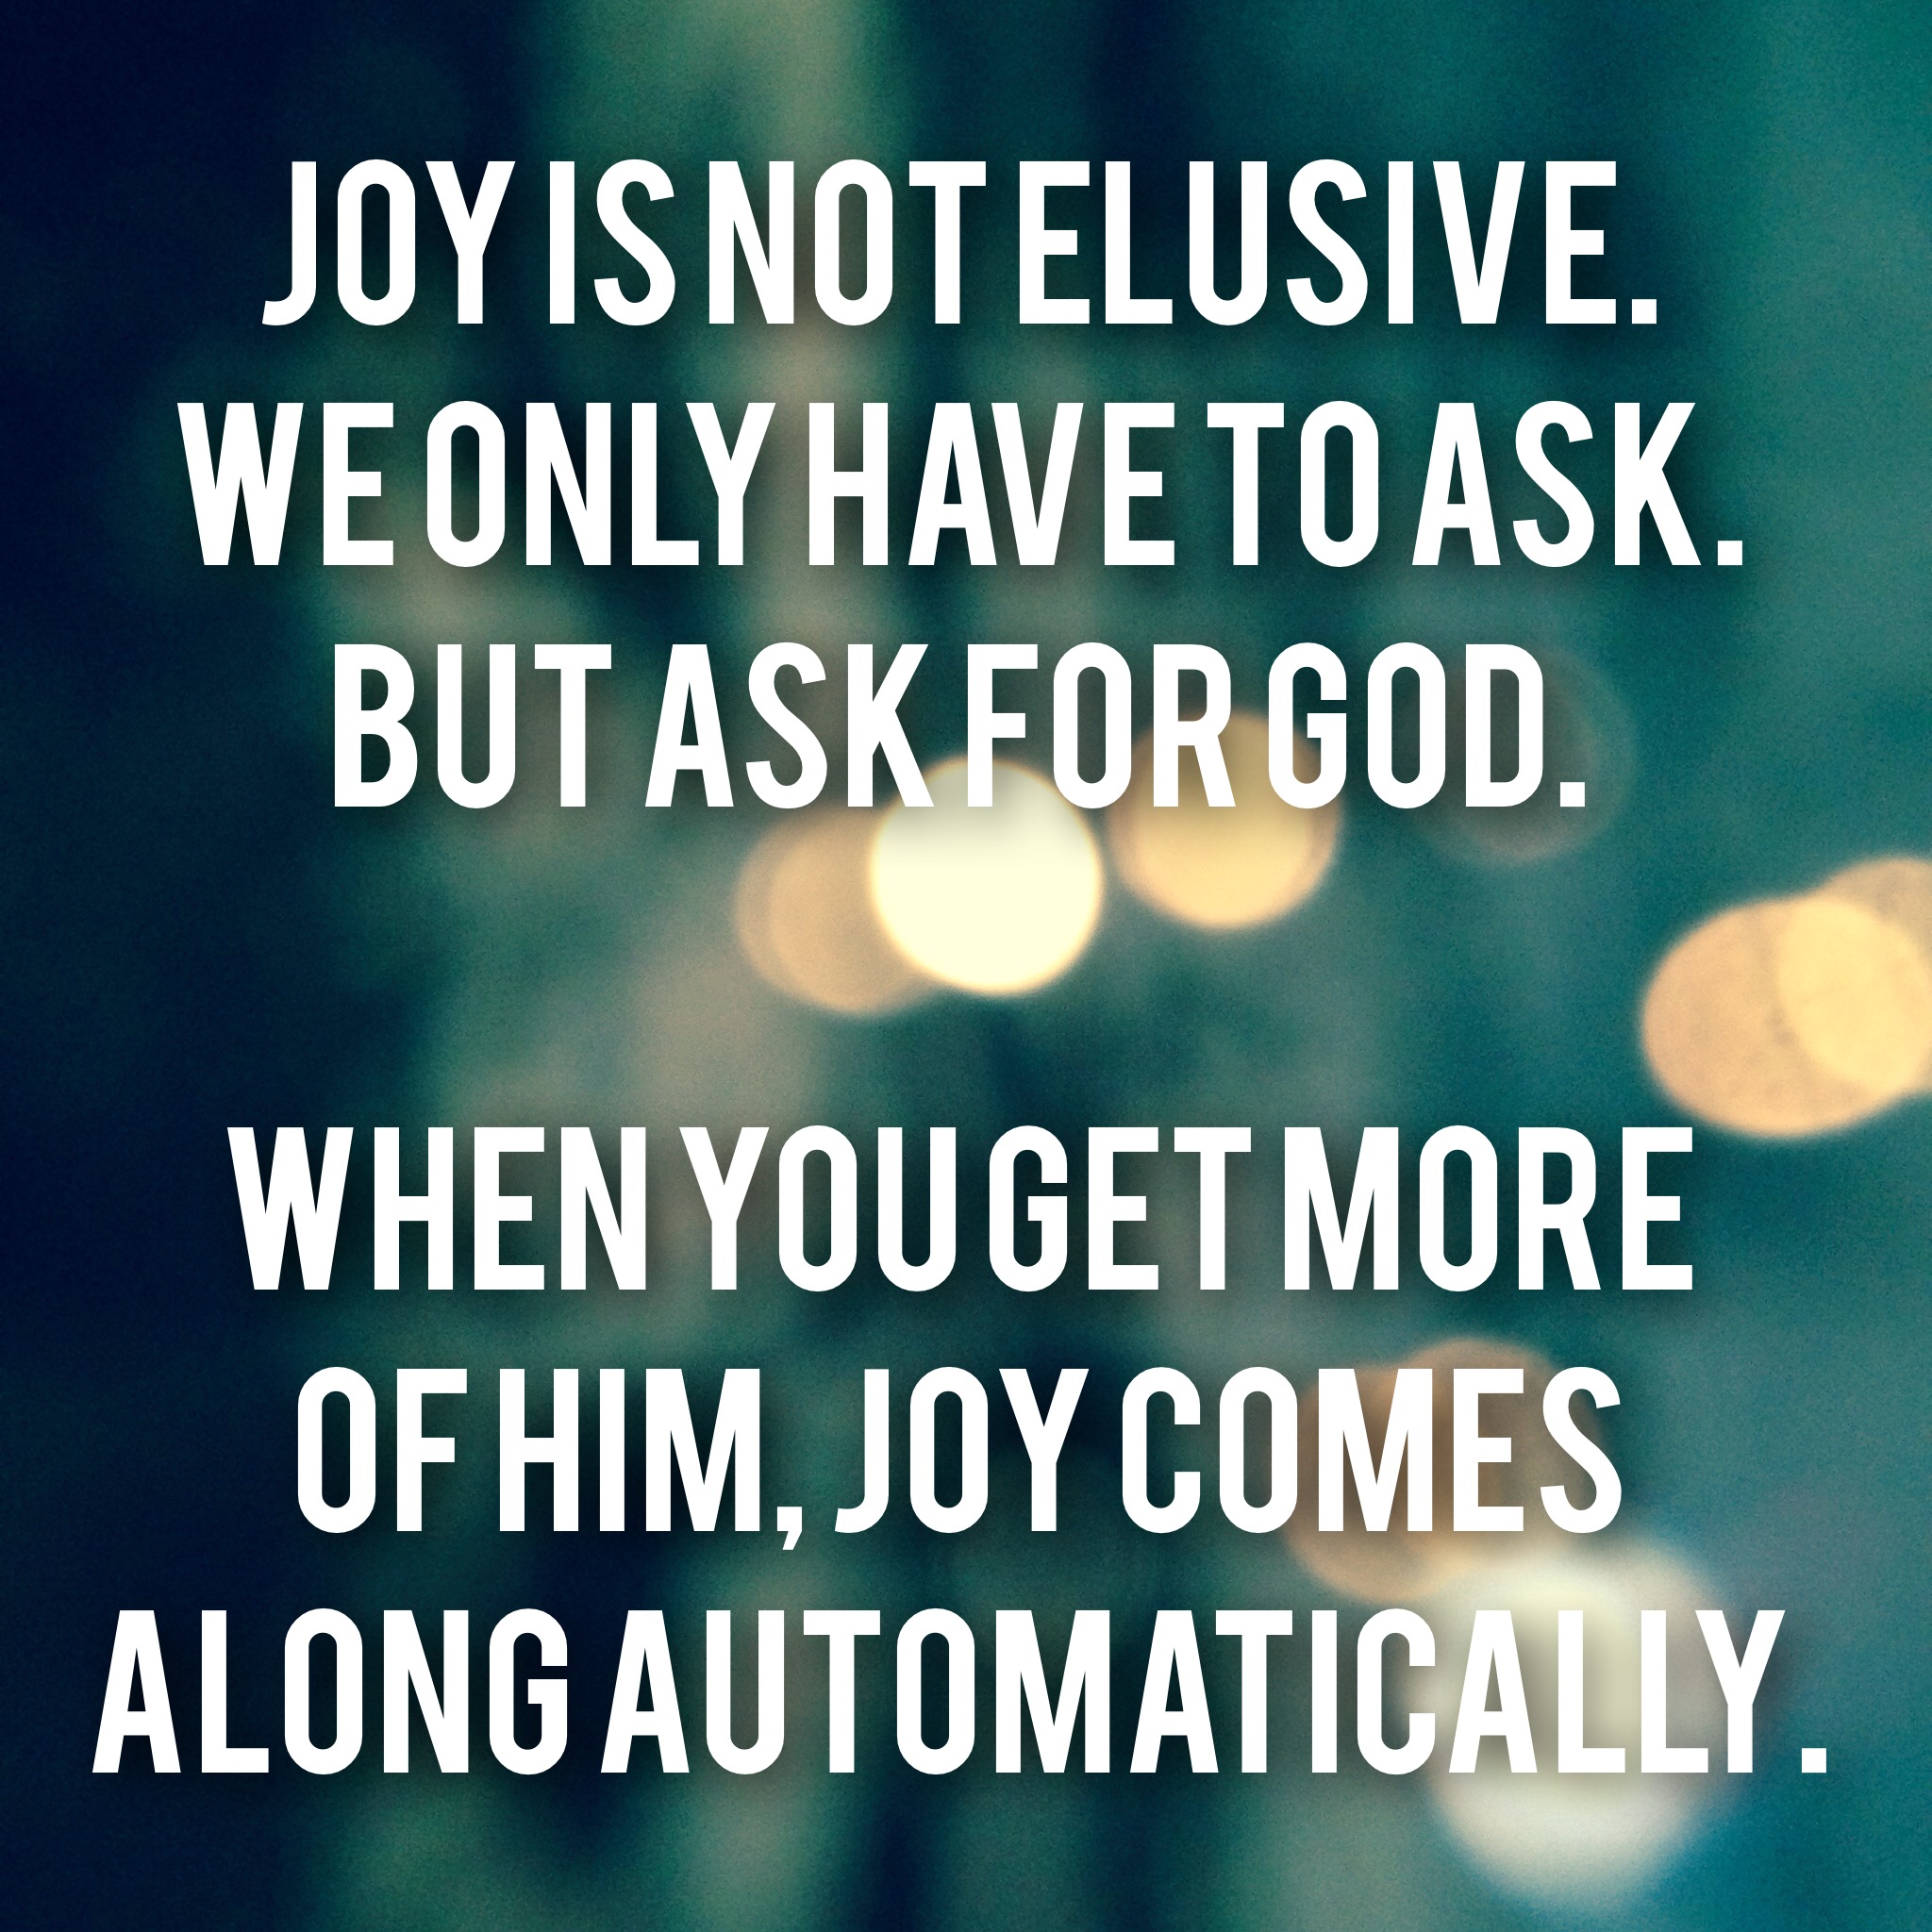 Joy is not elusive